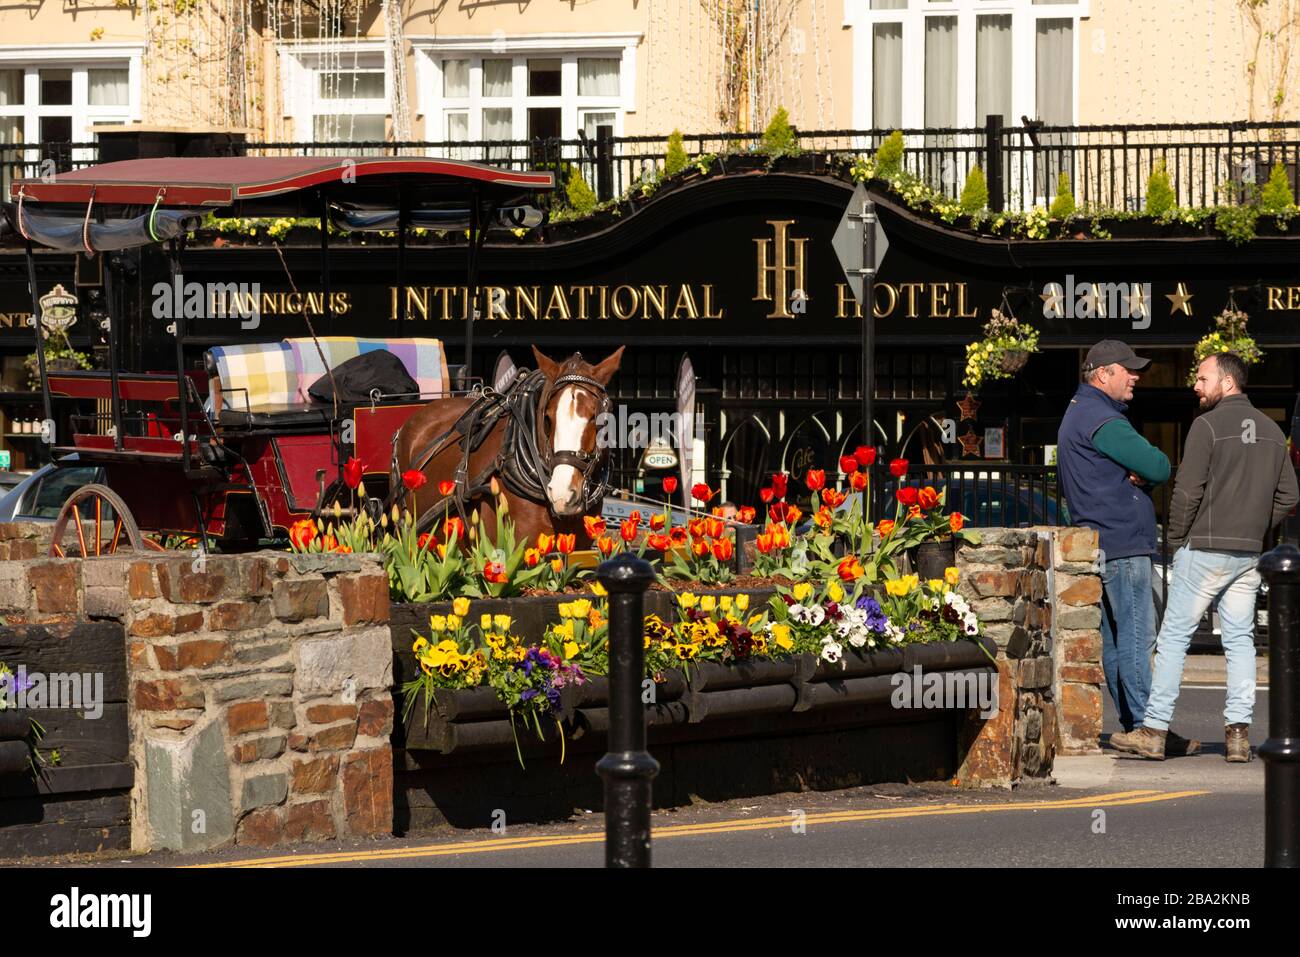 Jarveys esperando a los clientes frente al International Hotel en el centro de Killarney como vista habitual en el condado de Killarney Kerry Irlanda. Foto de stock